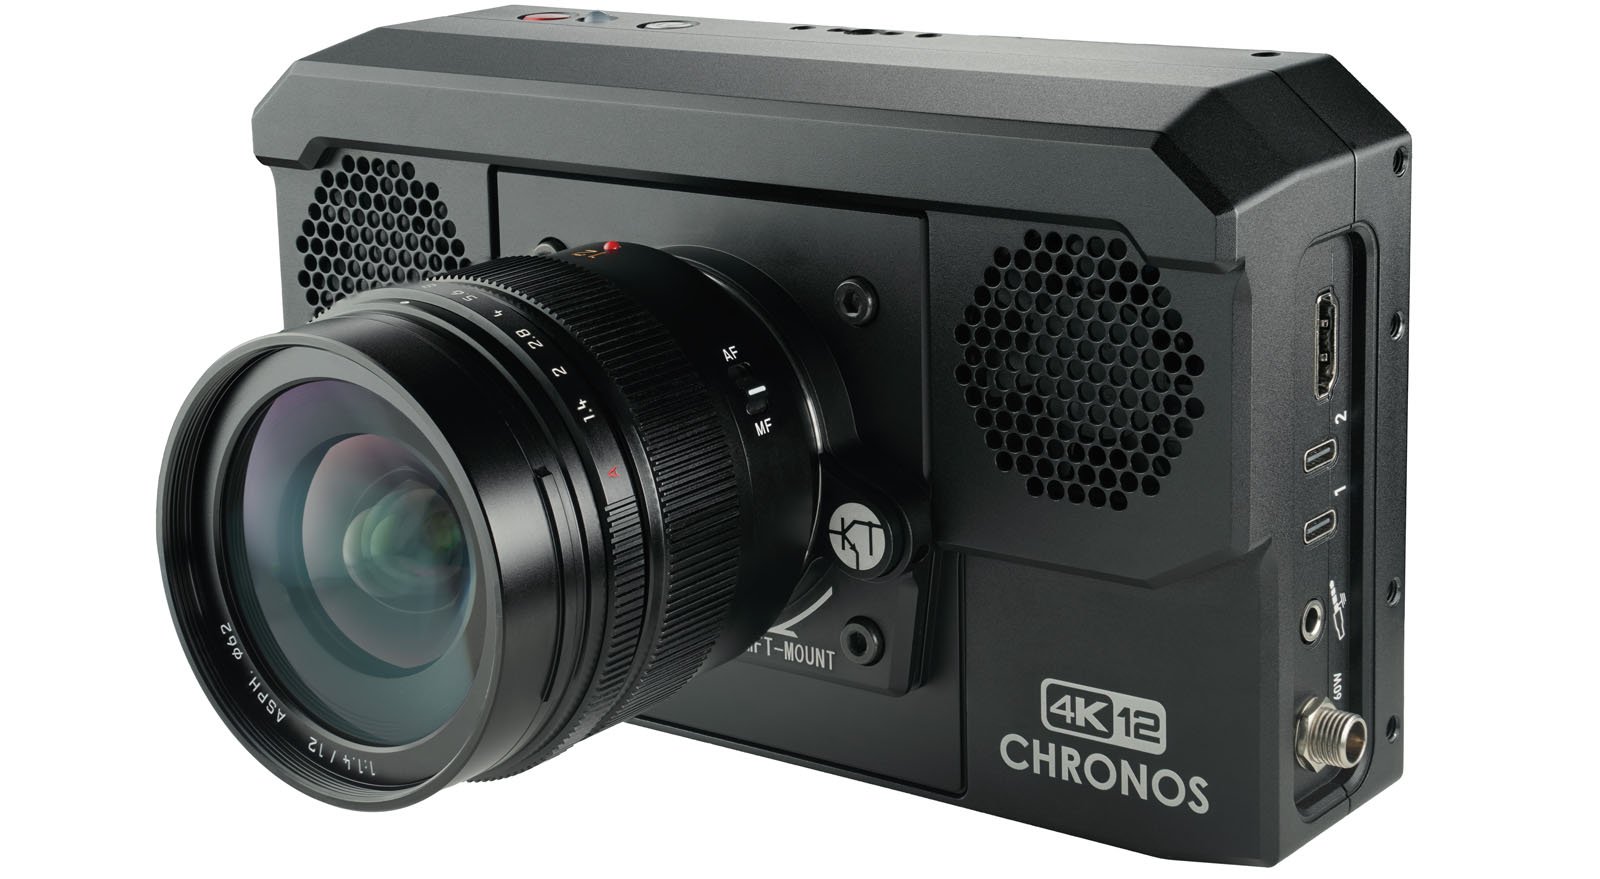 Chronos high-speed cameras